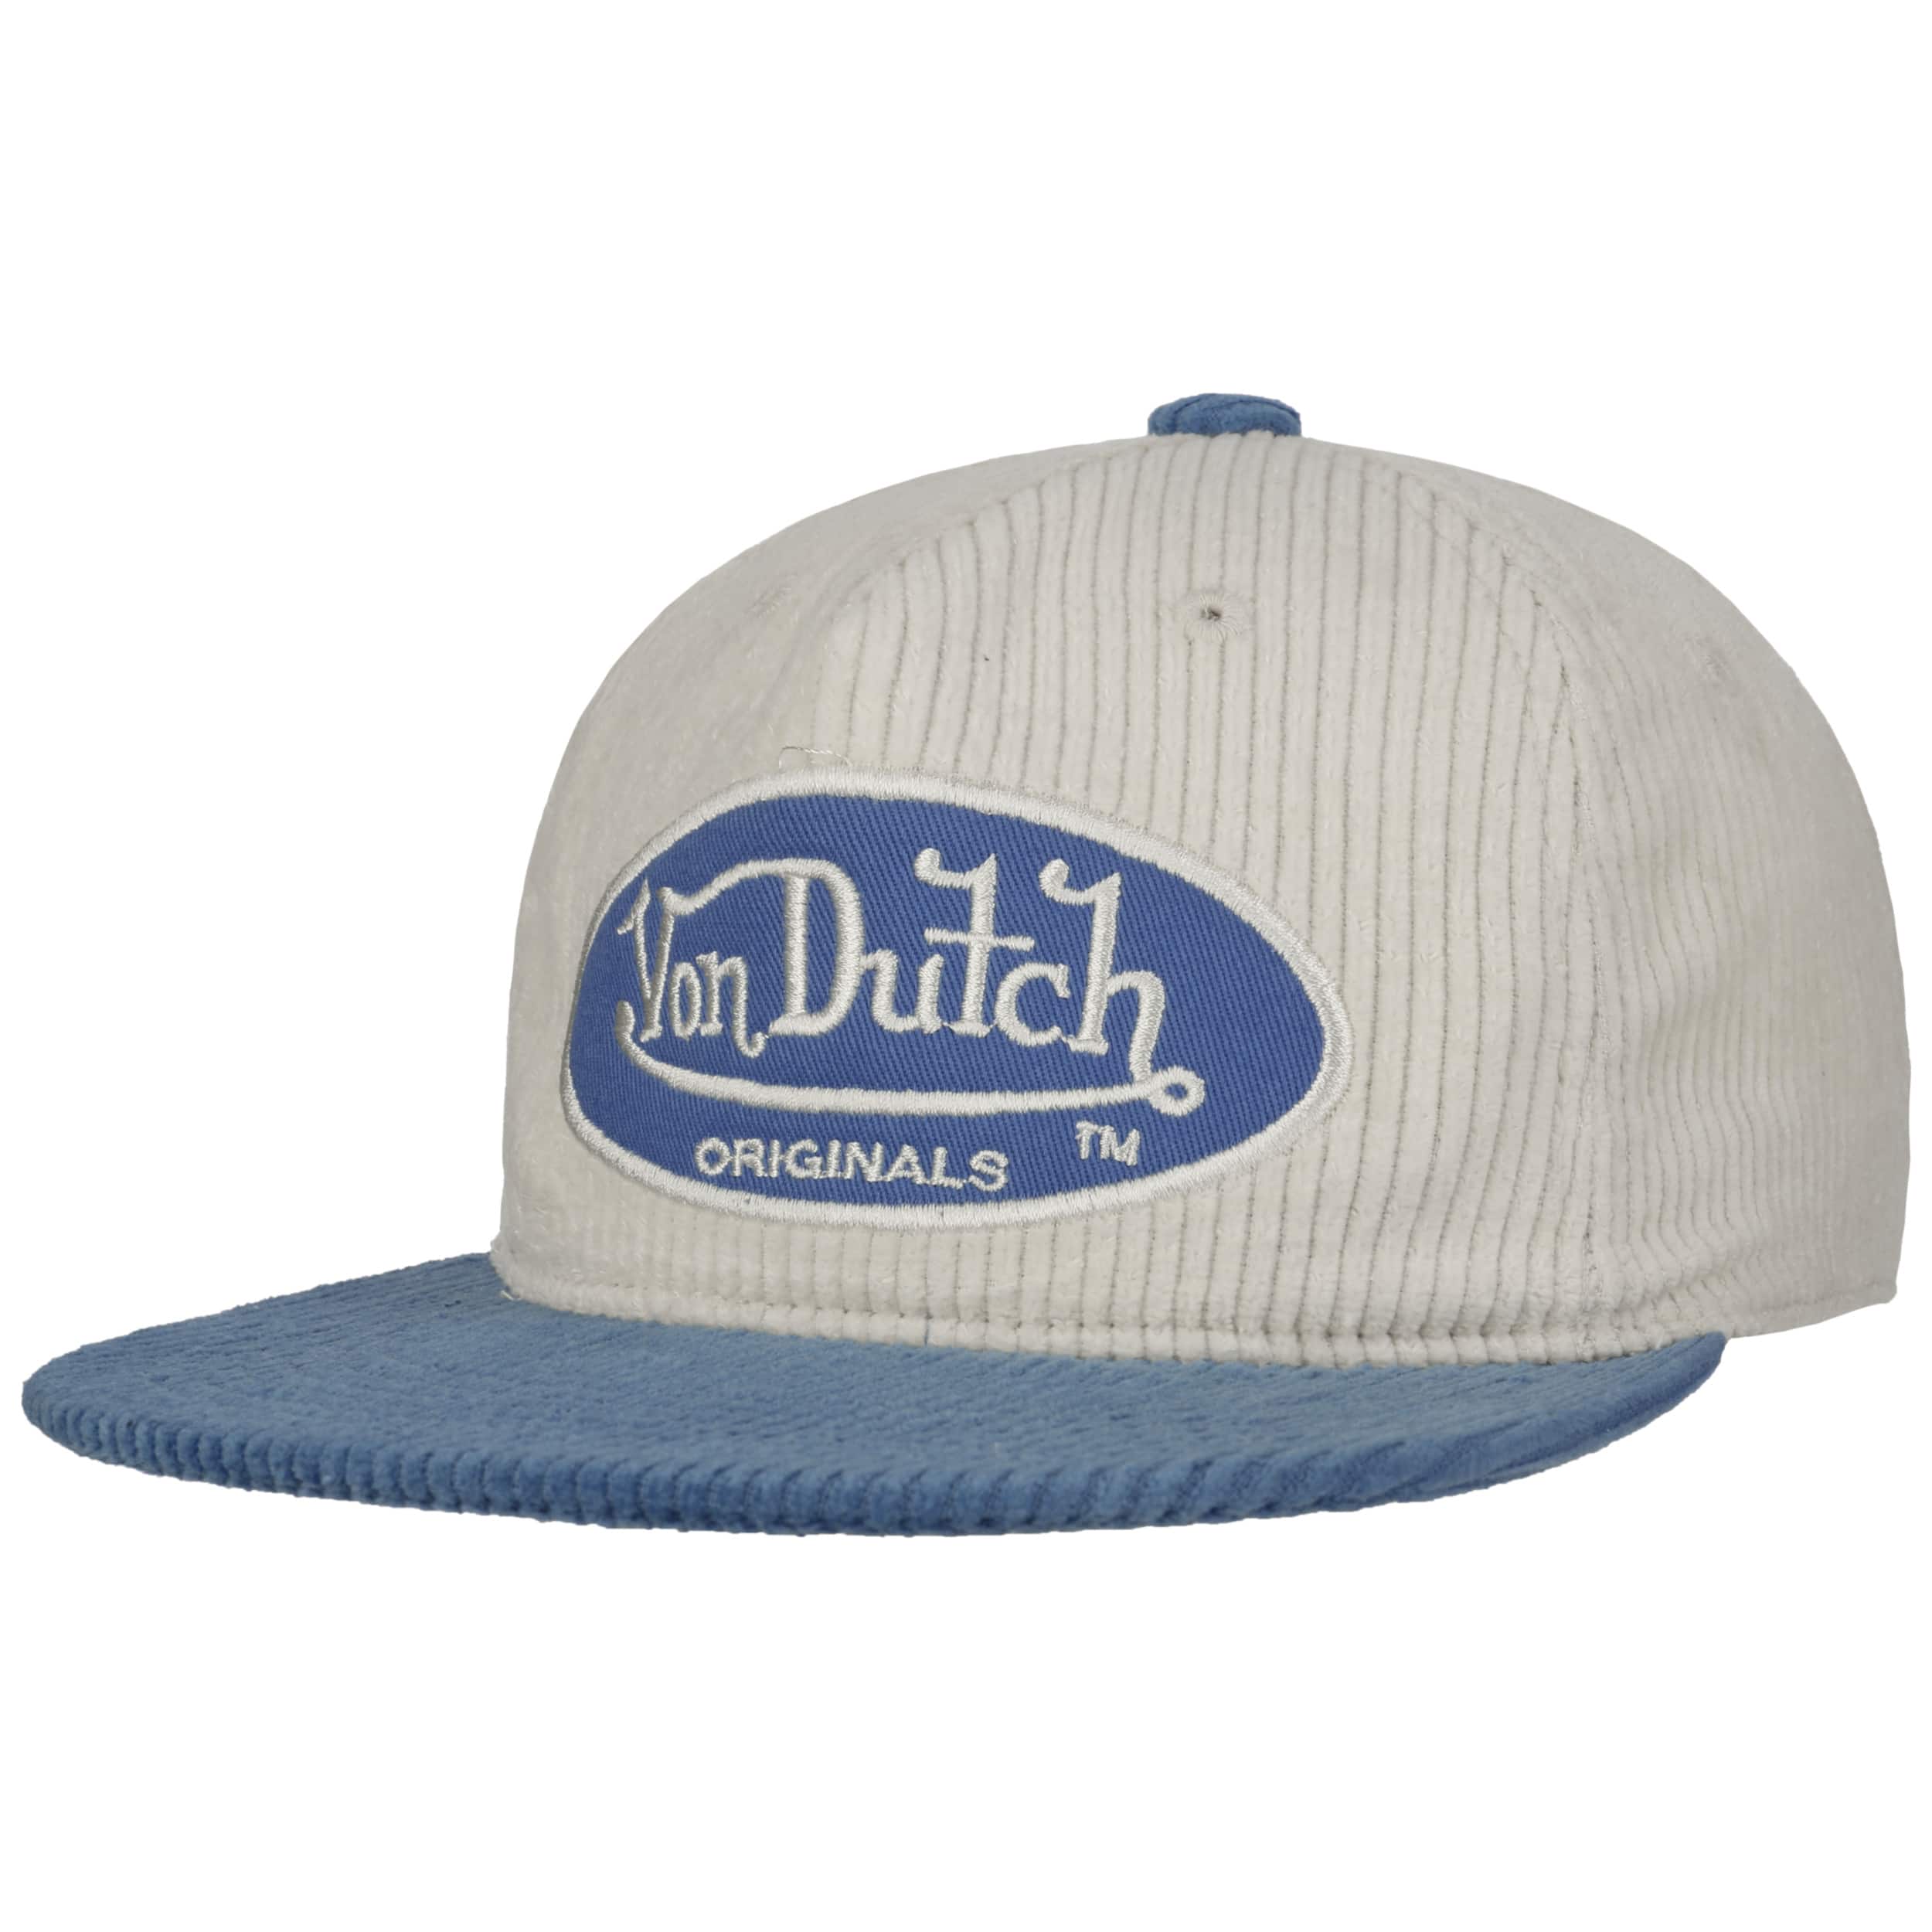 Utica Cord Oval Patch Cap by Von Dutch - 29,95 €